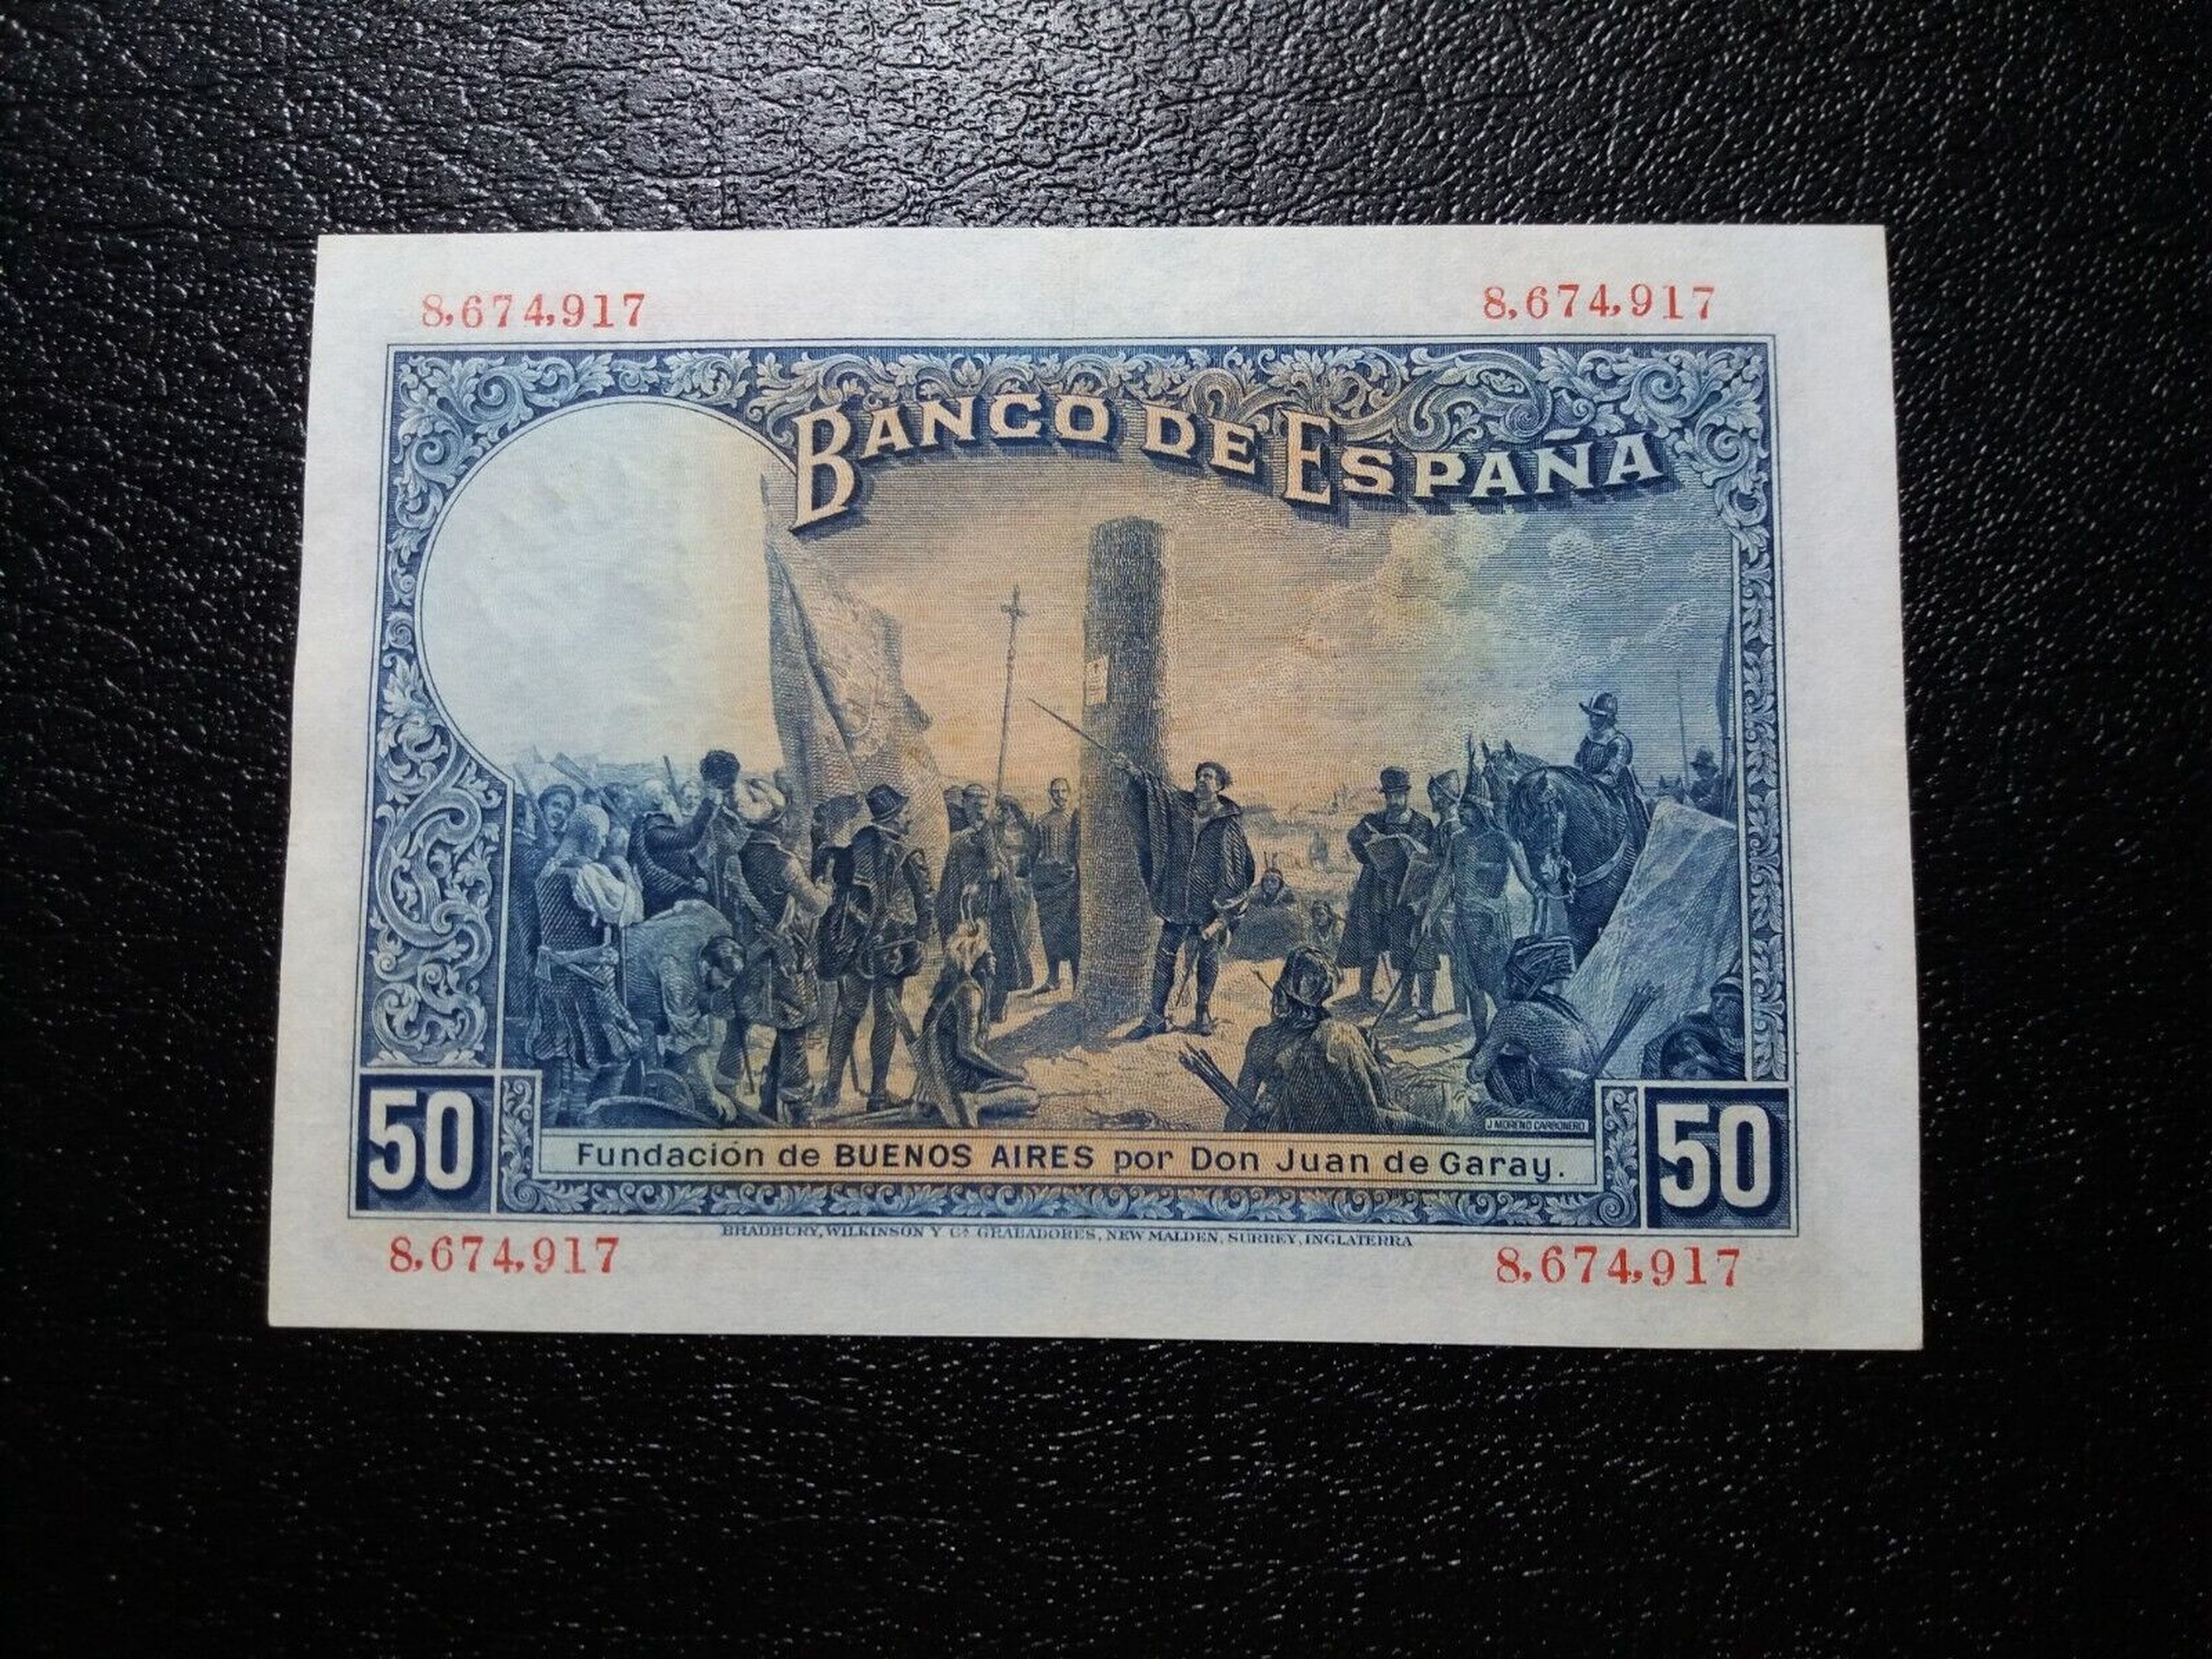 Billete de 50 pesetas